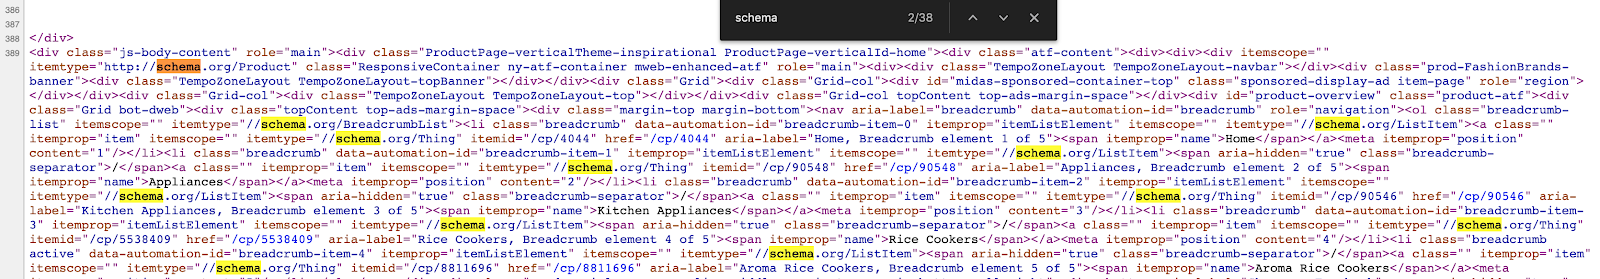 Schema Source Code